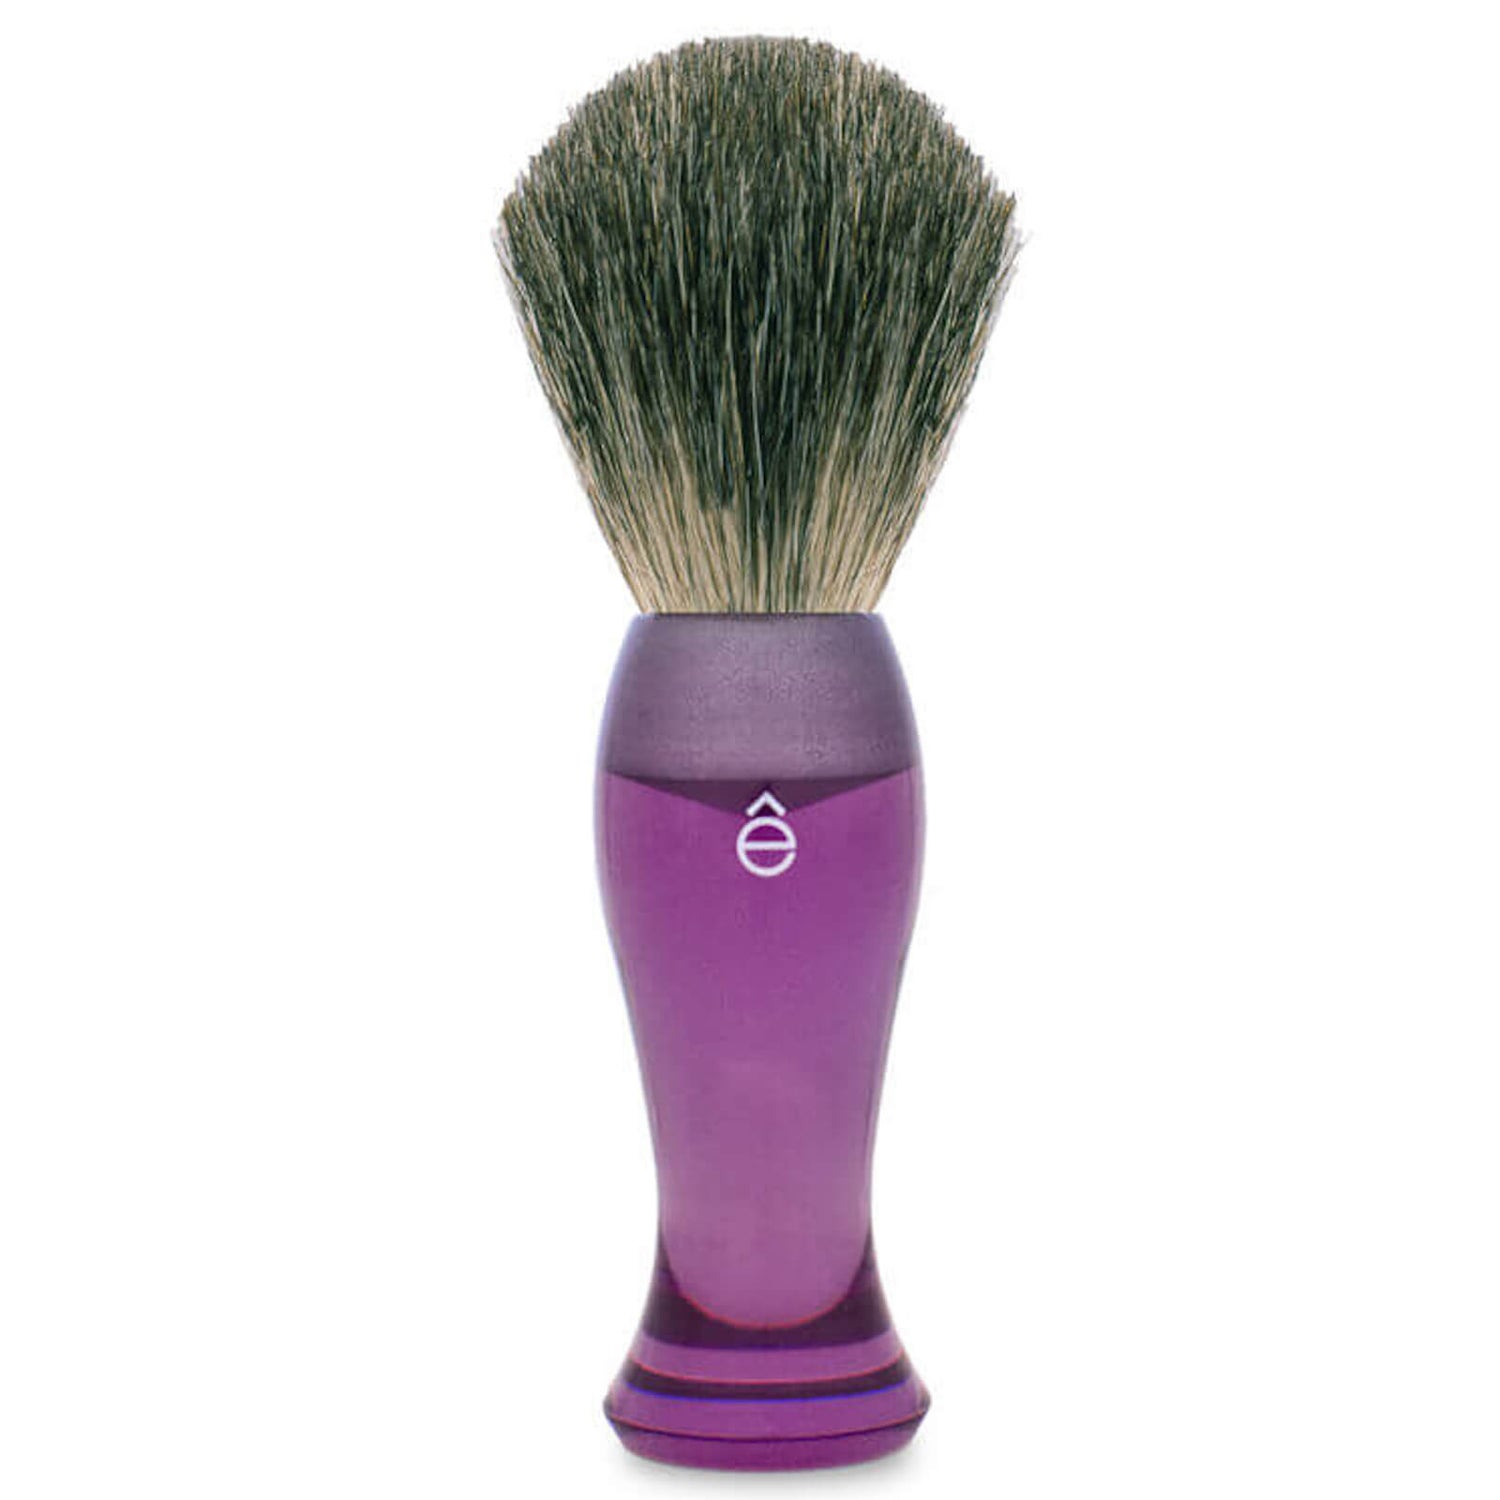 Бритвенная кисть из барсучьего волоса, фиолетовый цвет eShave Finest Badger Hair Shaving Brush Long Handle - Purple